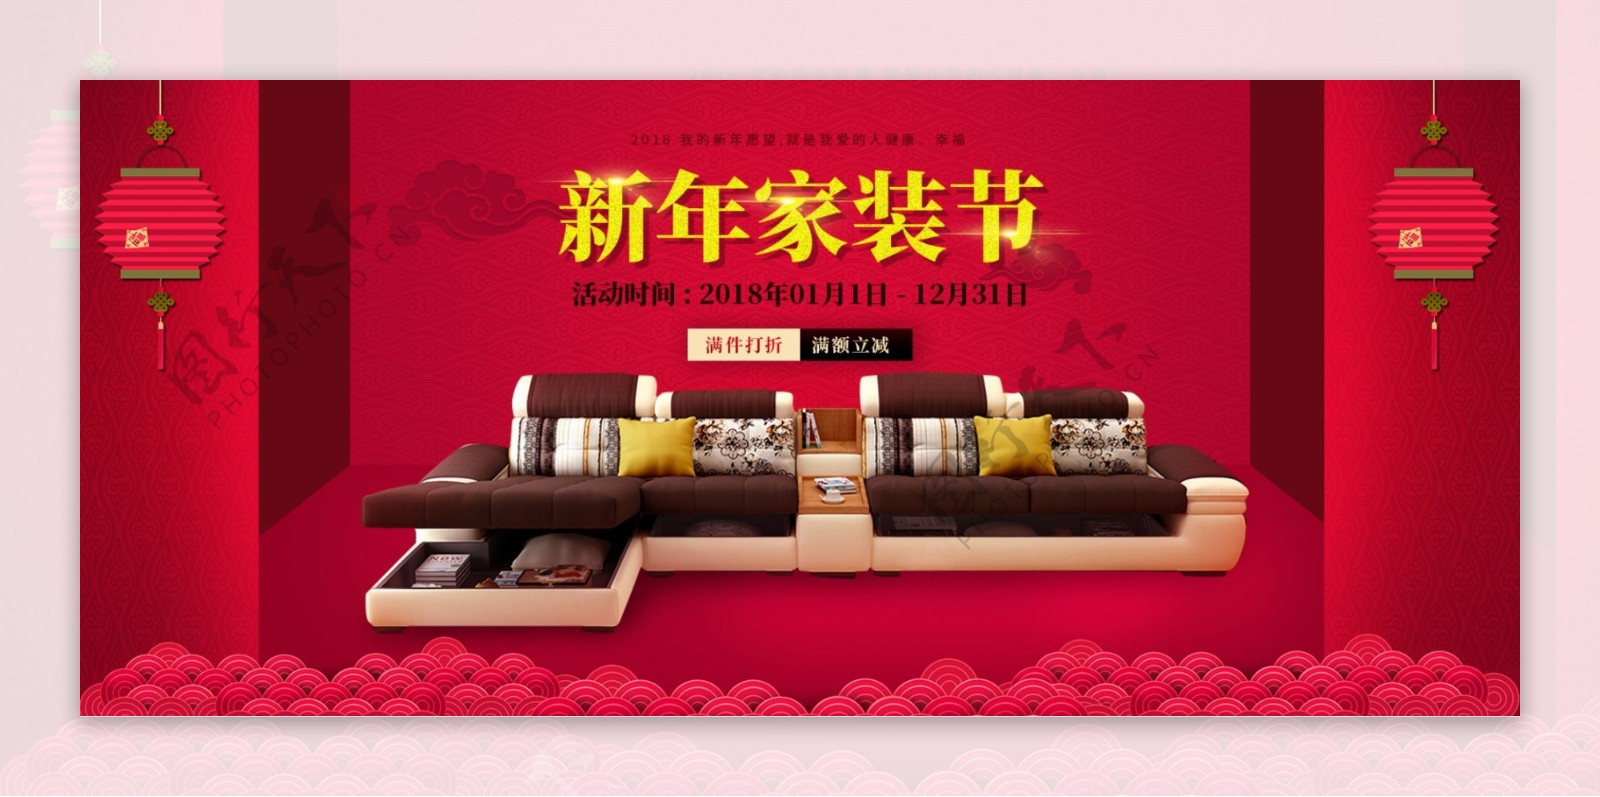 电商淘宝家具沙发新年家装节红色海报模版